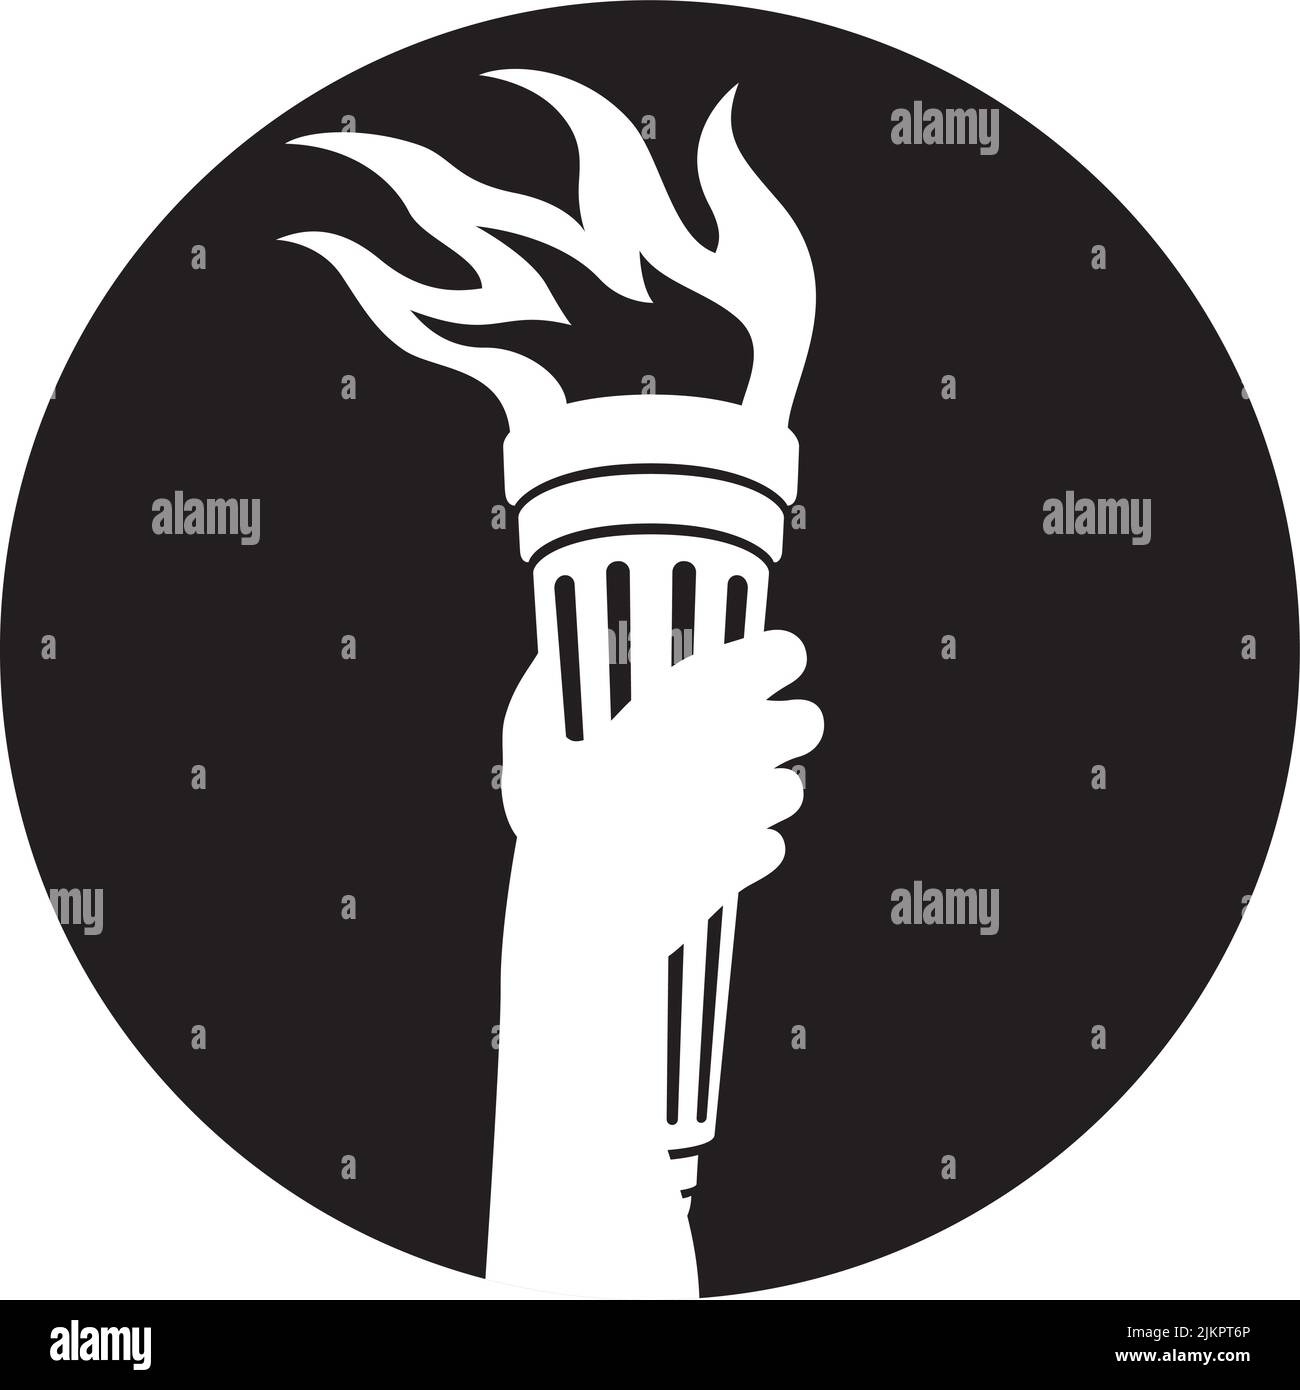 Badge ou icône de bras tenant une torche à brûler illustration vectorielle d'un bras de personnes tenant une torche à flamboyante haut pour symboliser l'illumination, la liberté et k Illustration de Vecteur